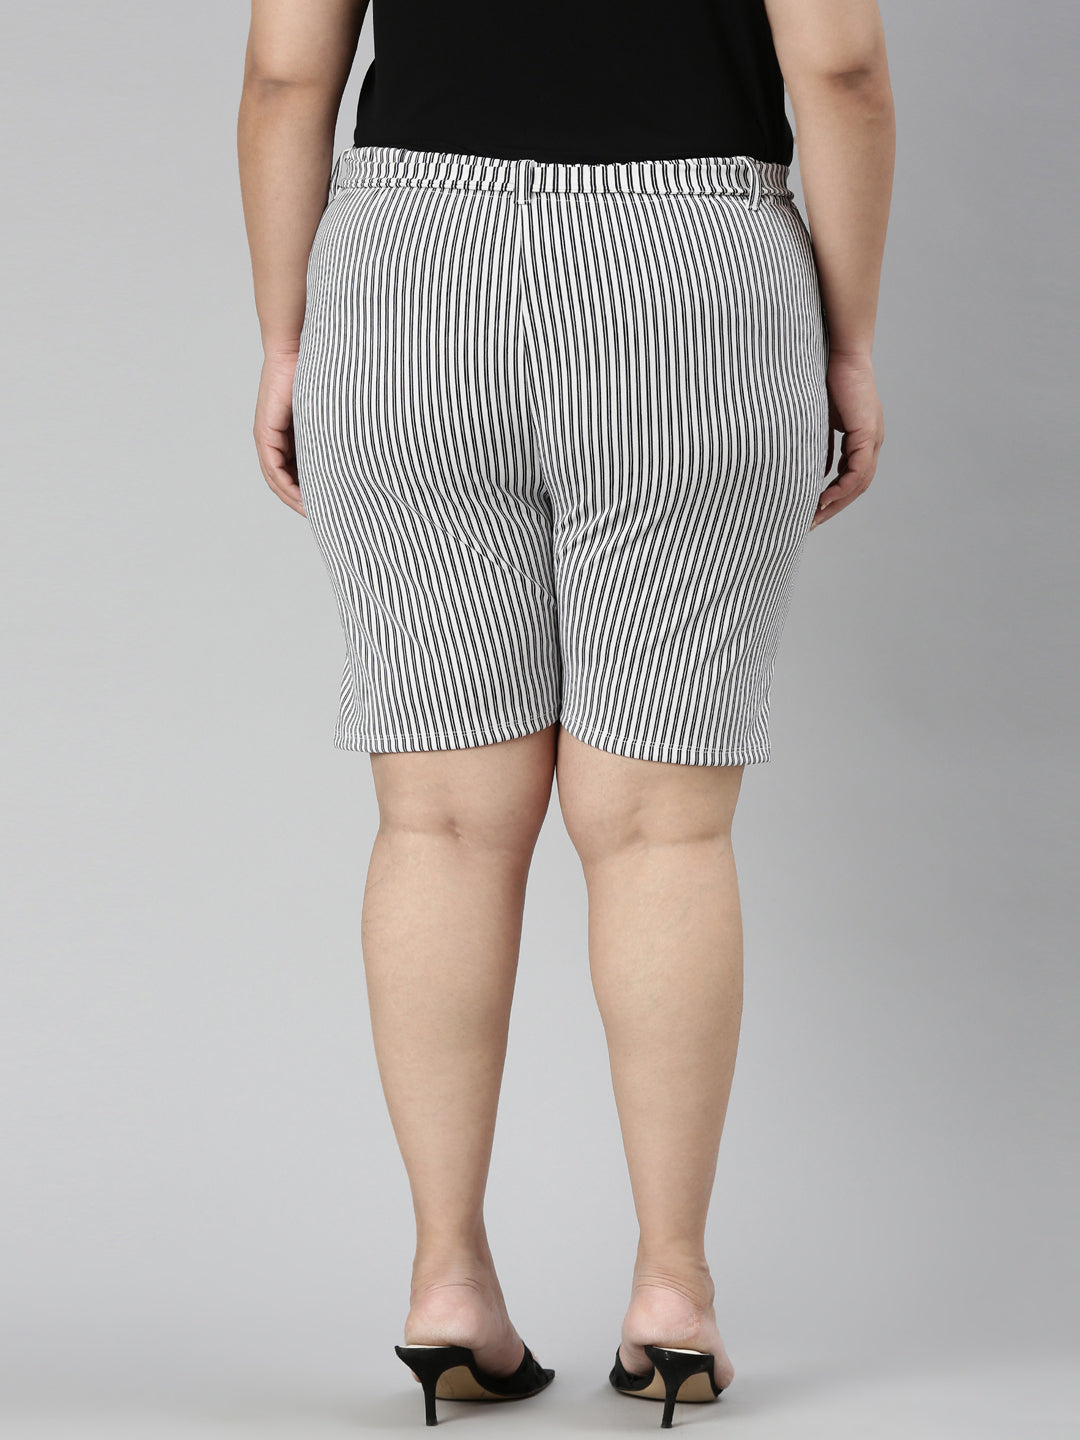 TheShaili - Women's Regular fit  Black & White shorts